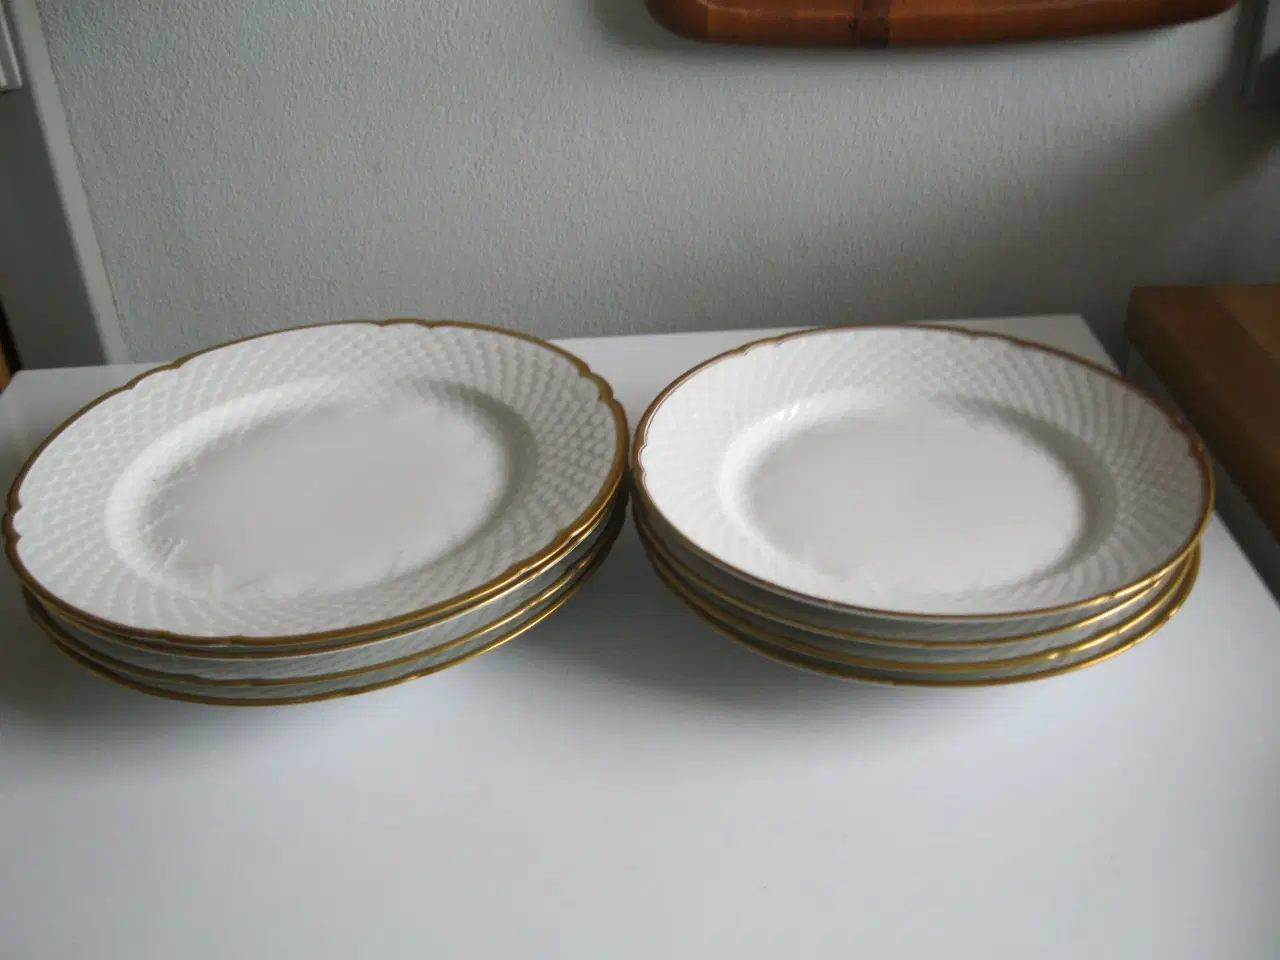 Billede 1 - 7 stk.  hvide Åkjær  B&G tallerkener 21+24 cm. Nye